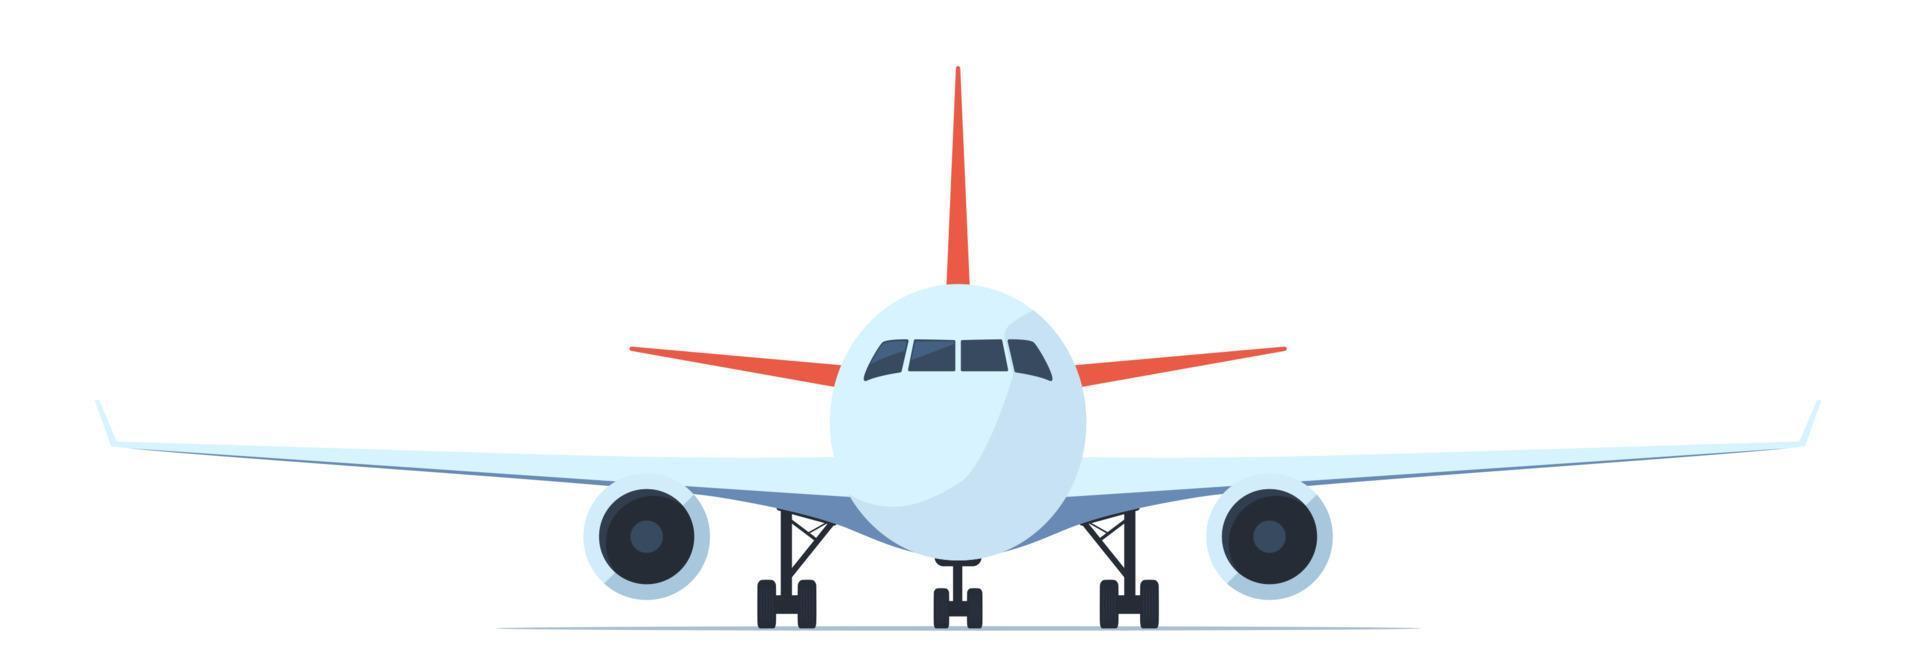 avión de pasajeros, vista frontal. ilustración de vector plano de avión con ojos de buey, alas y motores.